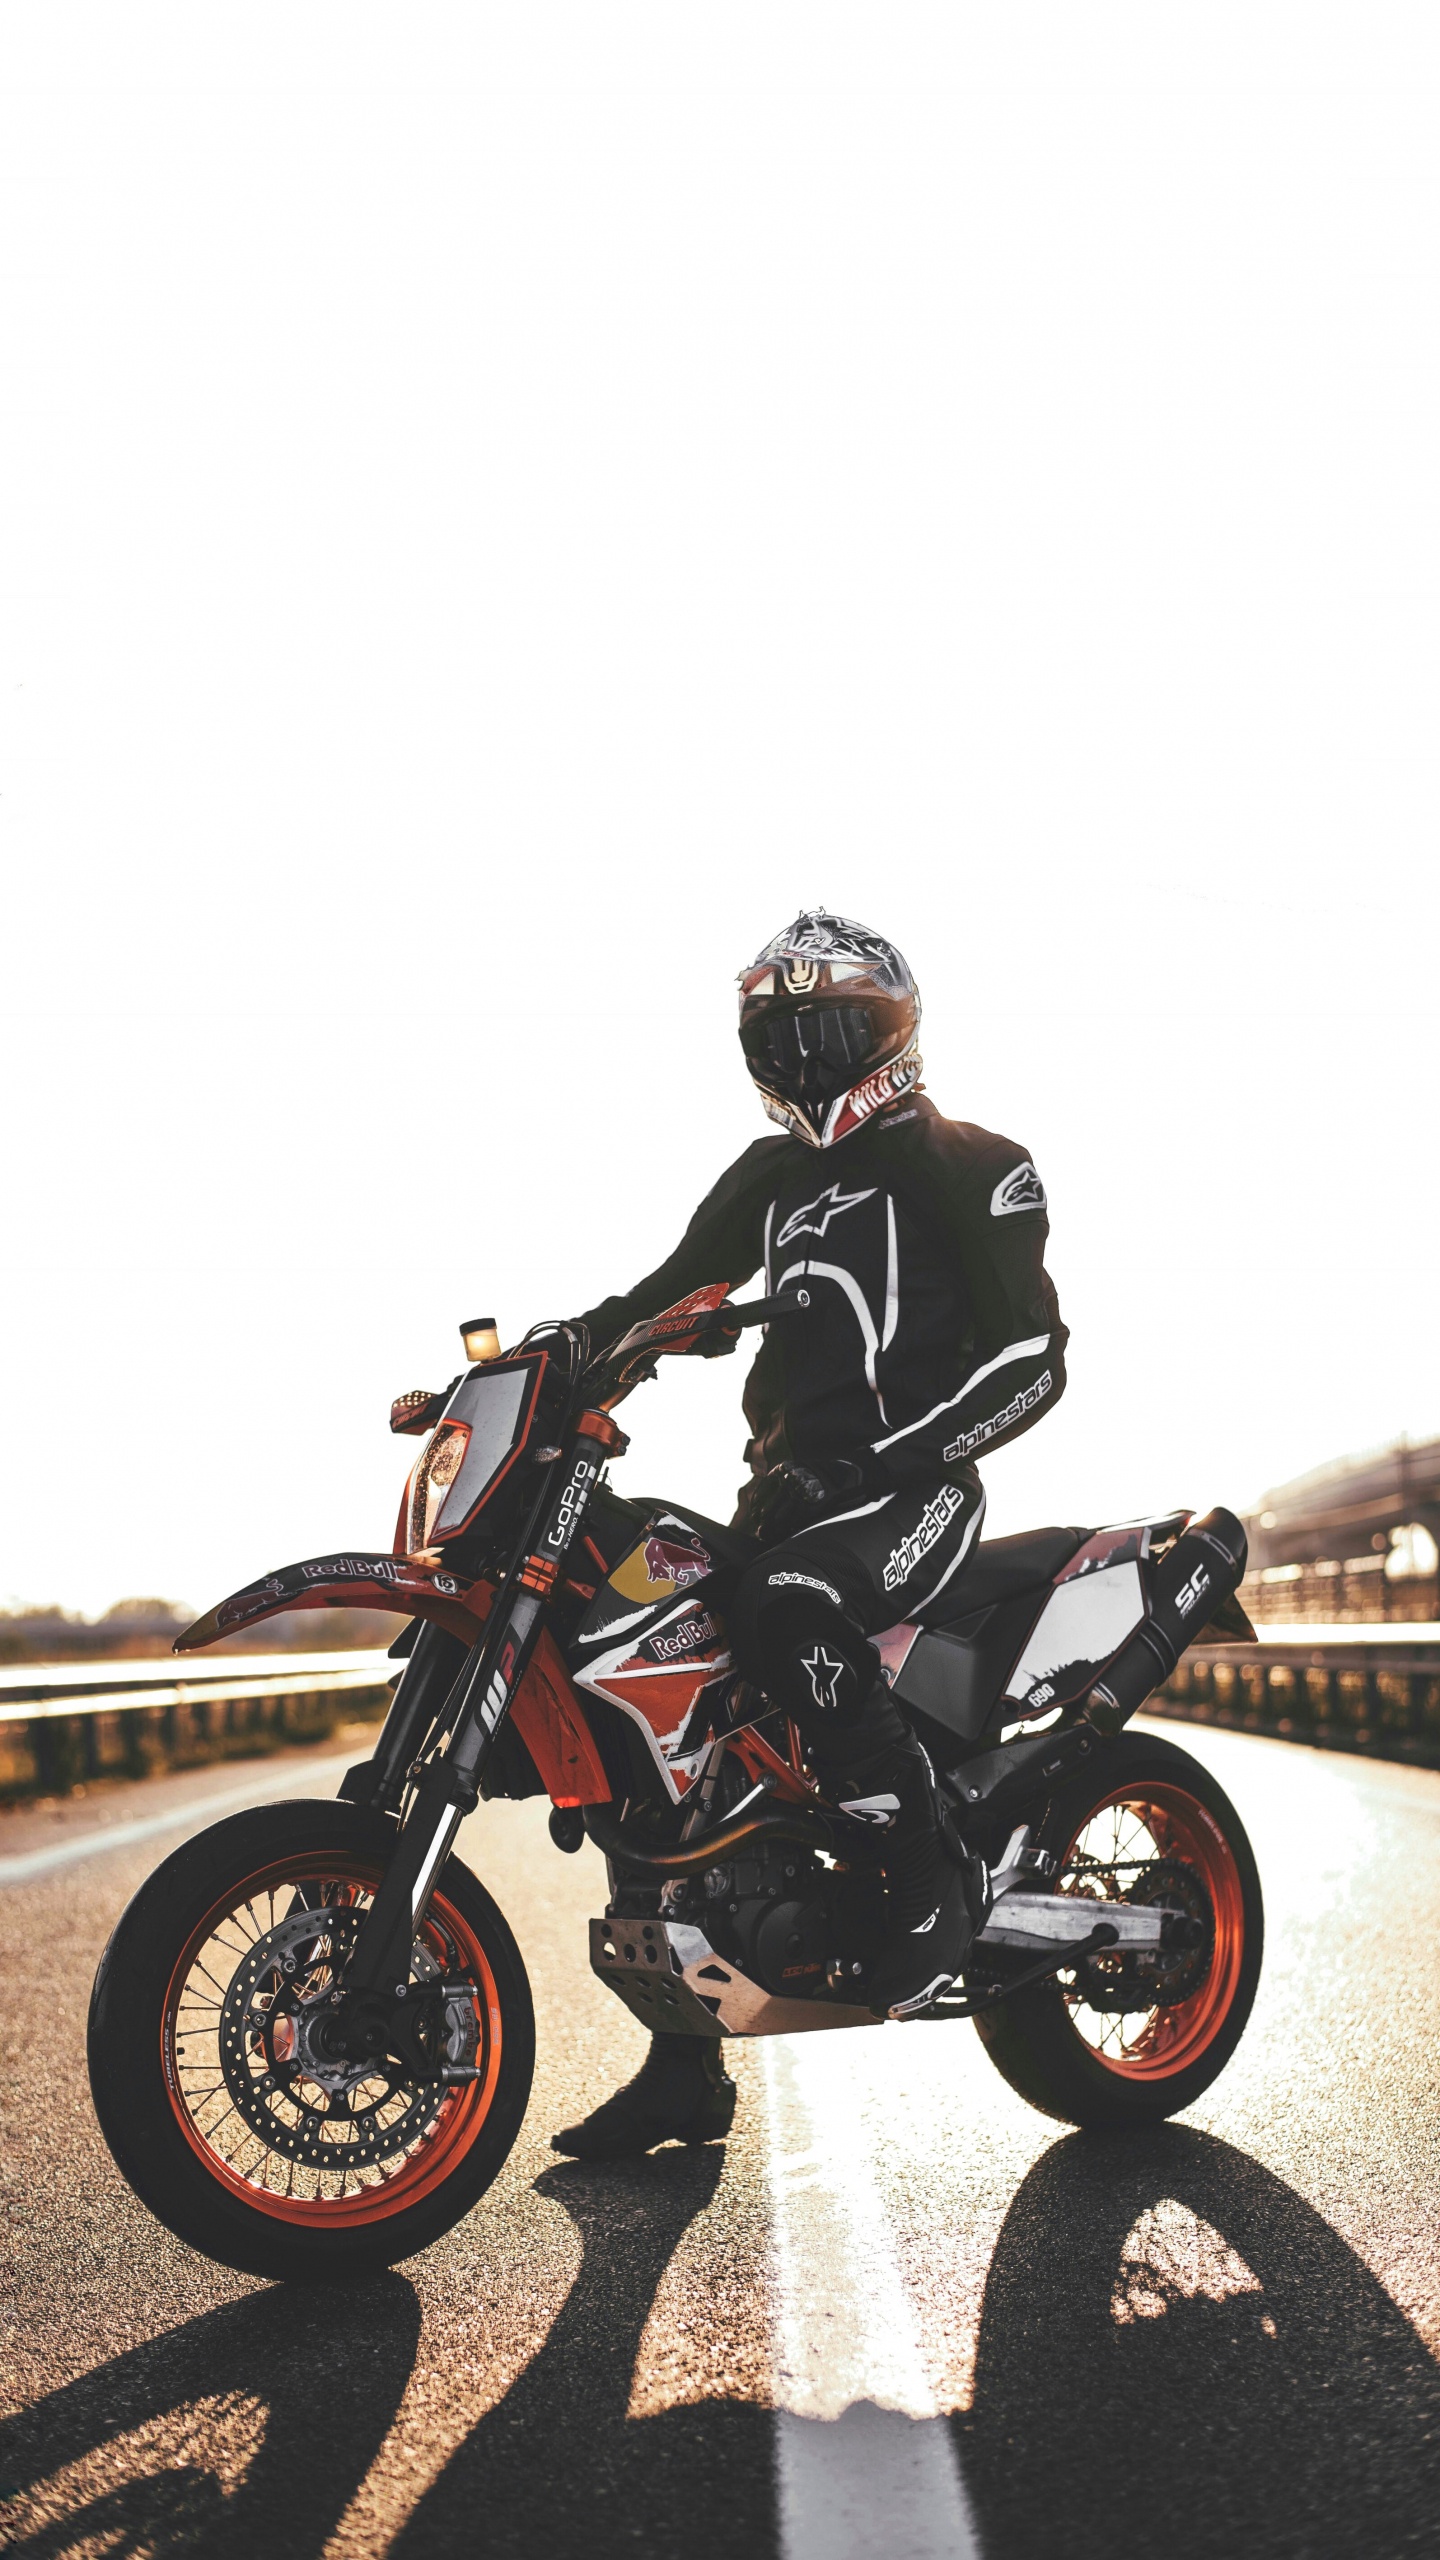 Hombre de Chaqueta Negra Montando Motocicleta. Wallpaper in 1440x2560 Resolution